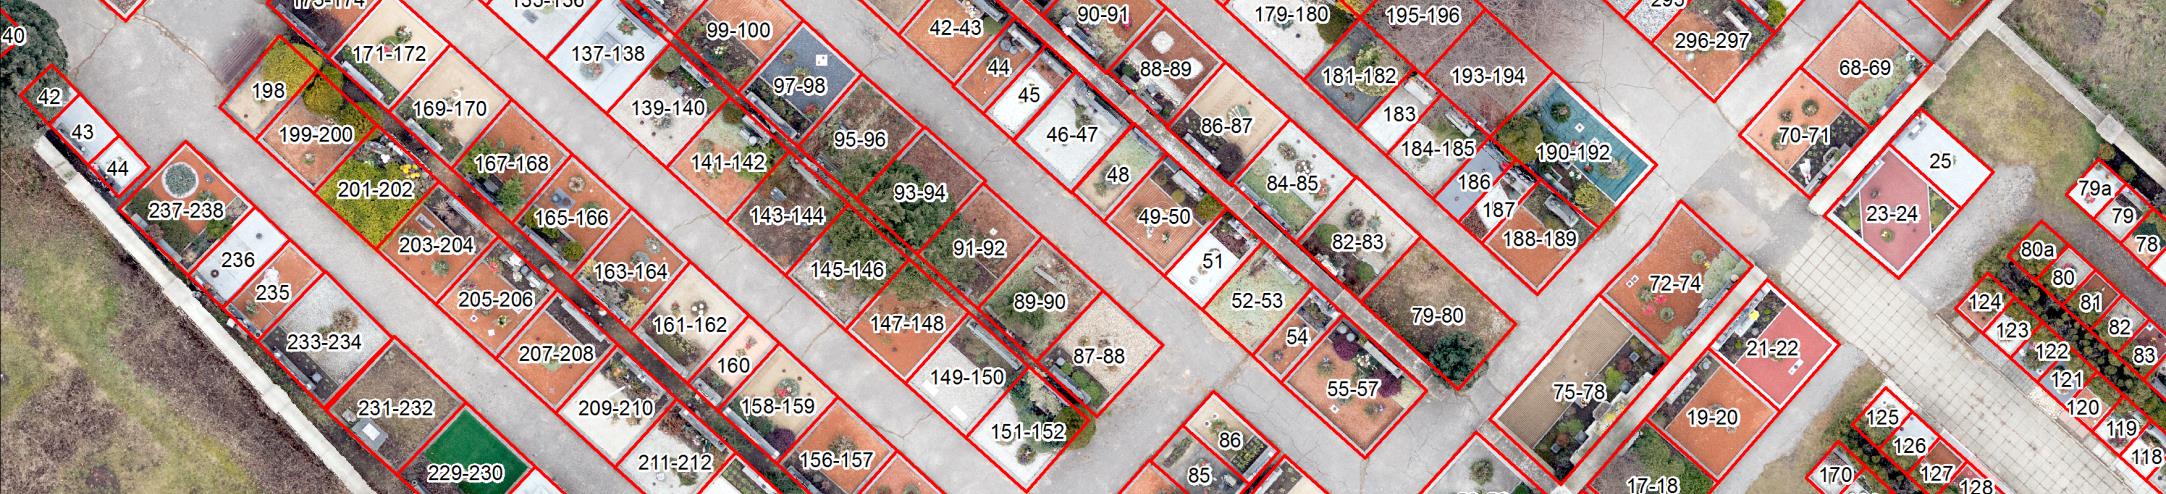 Identifikace hrobových míst Propojení s vektorizovanými analogovými mapami Využití geotagovaných fotografií